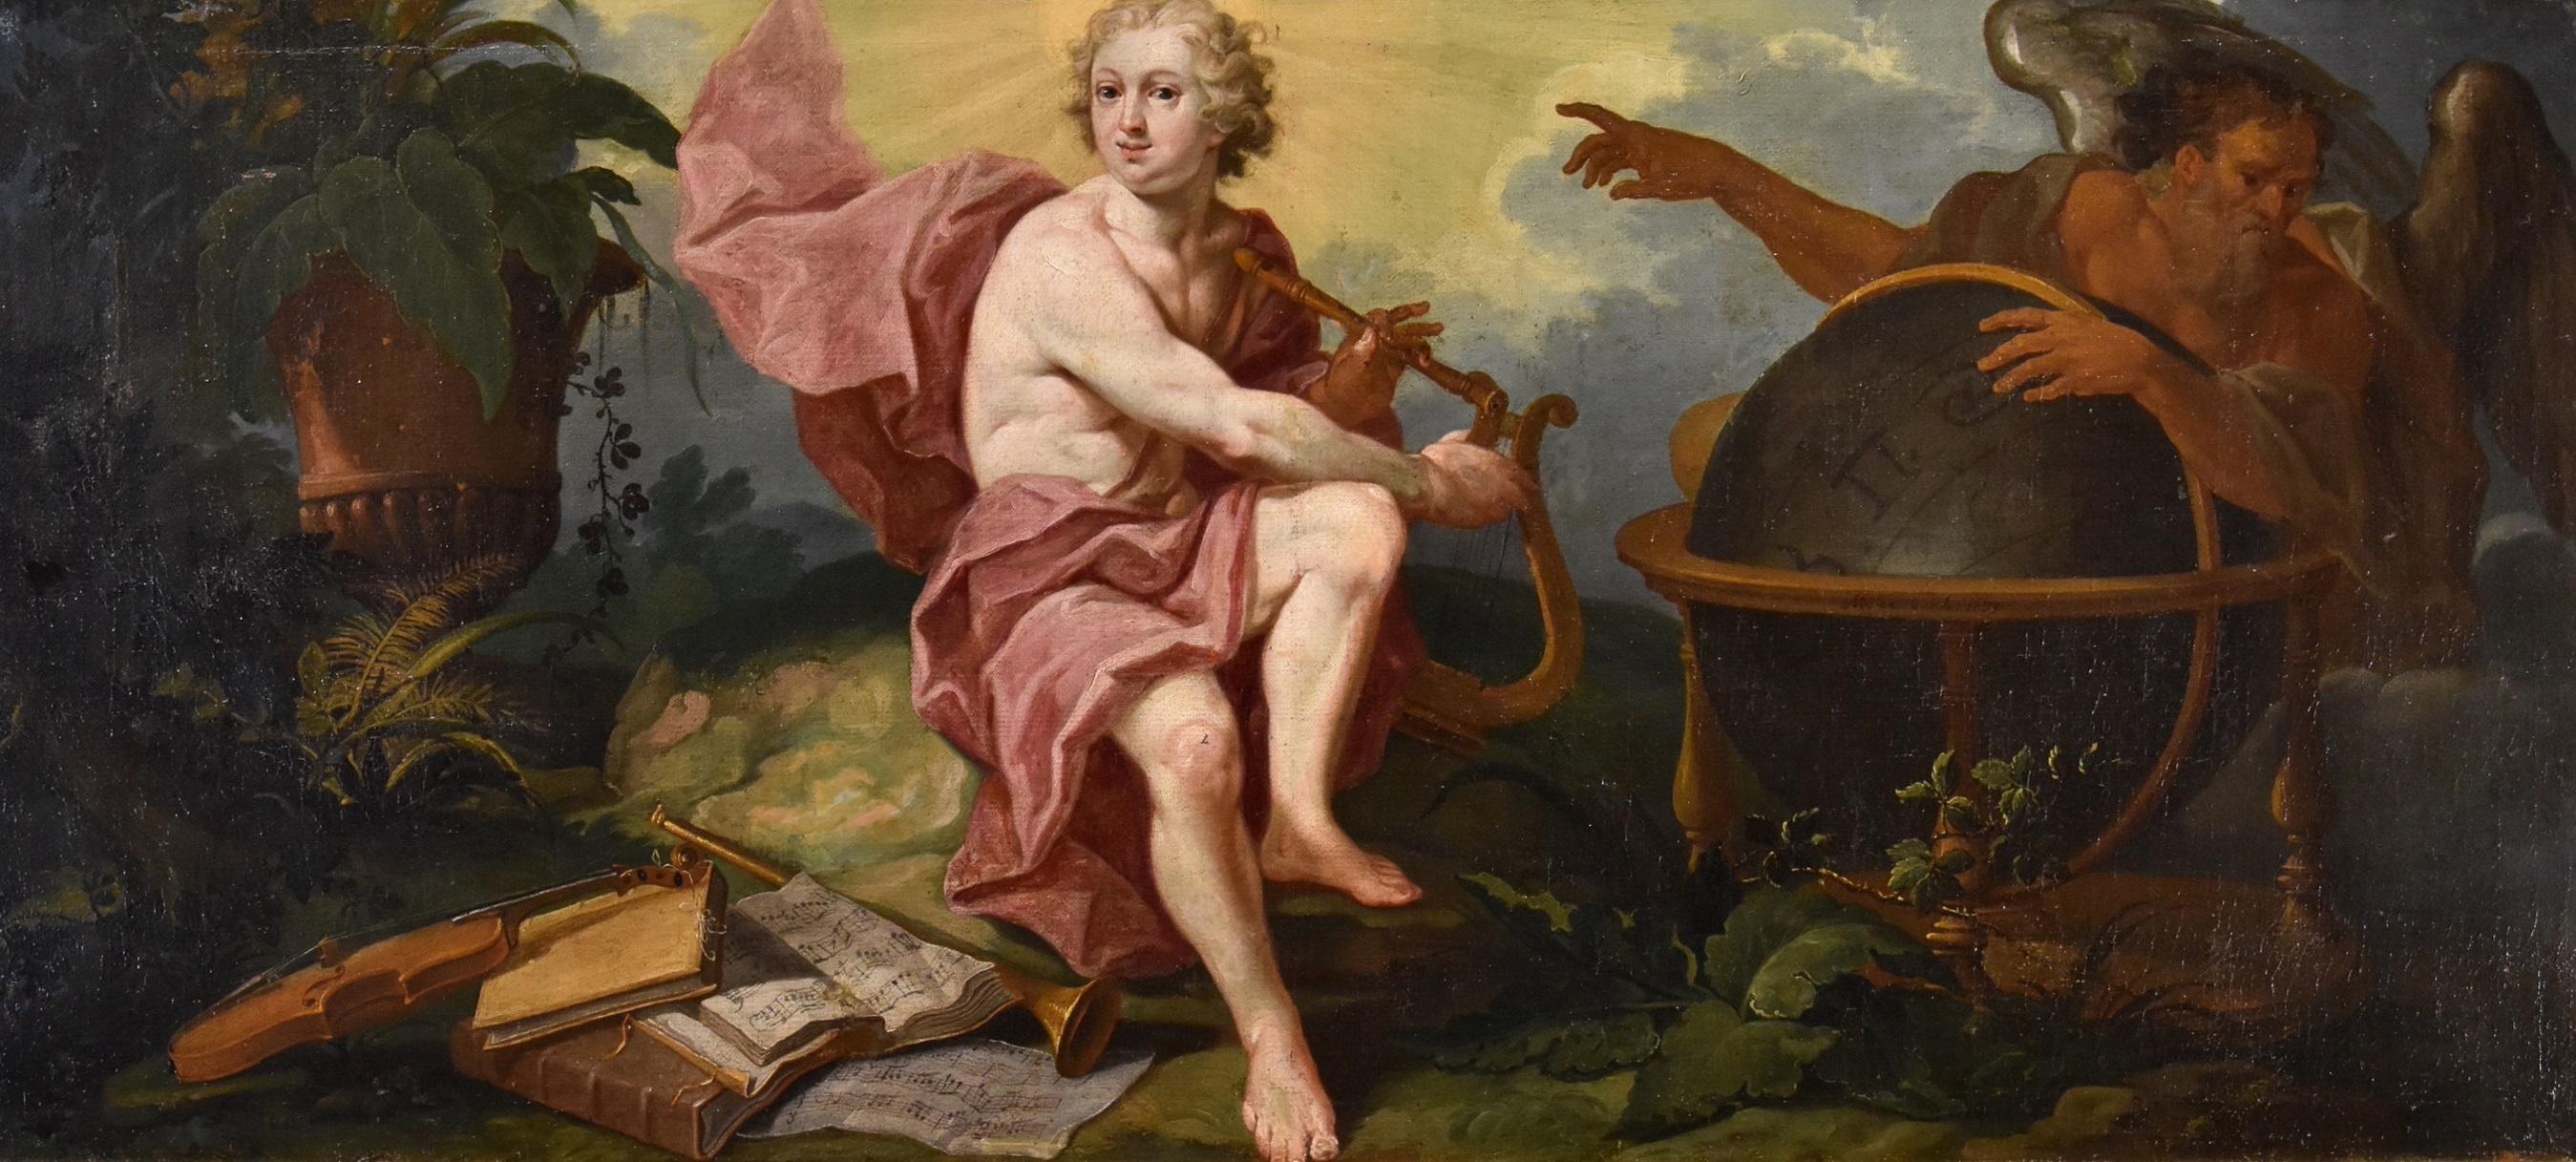 Allegory Triumph Of Art Over Time De Visch Paint 18th Century Oil on canvas Art  - Painting by Matthias De Visch (1701 - 1765) 